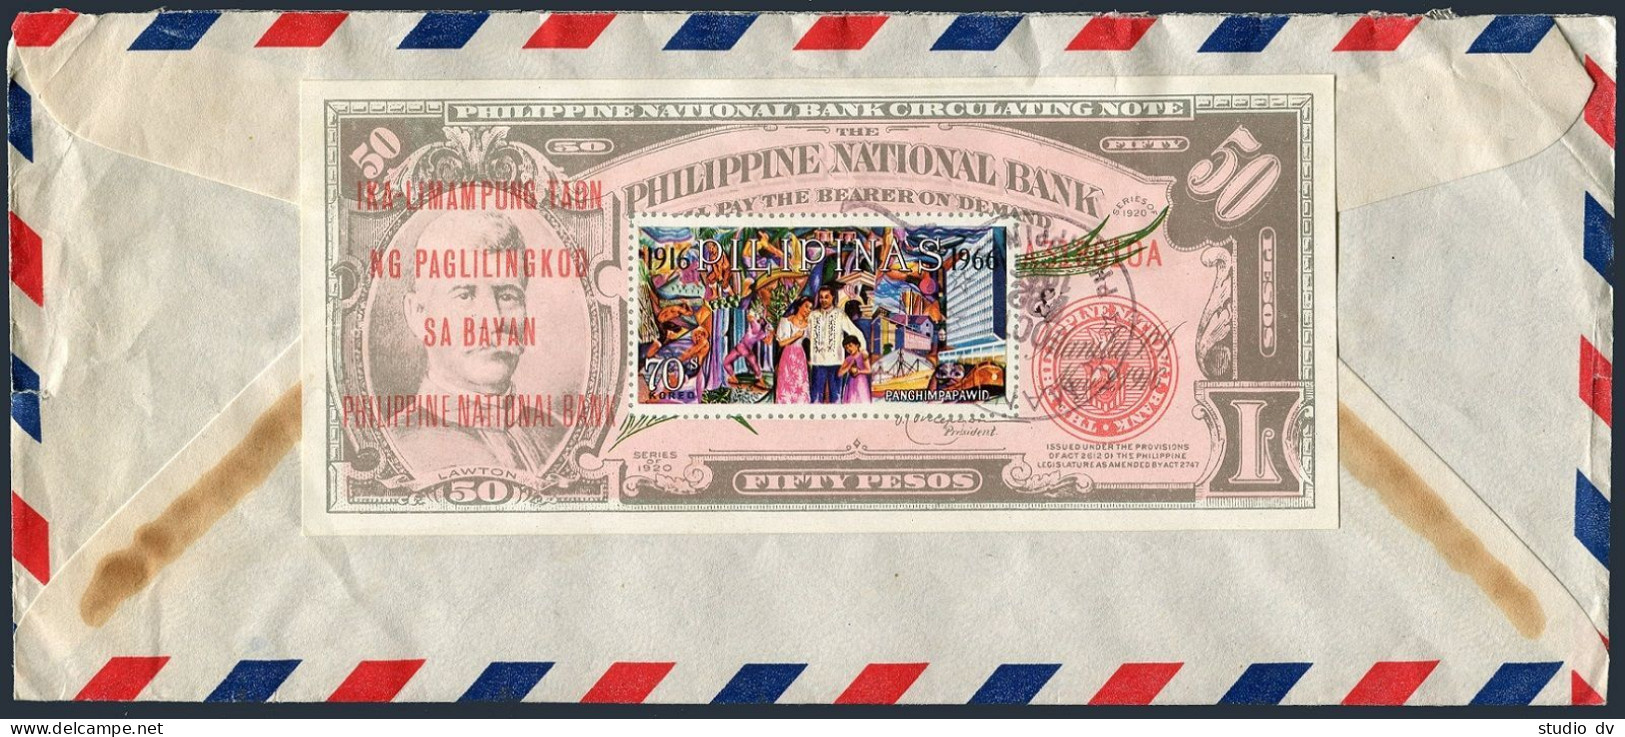 Philippines C93 Canceled/envelope,MNH. Philippine National Bank-50, 1966. - Filipinas